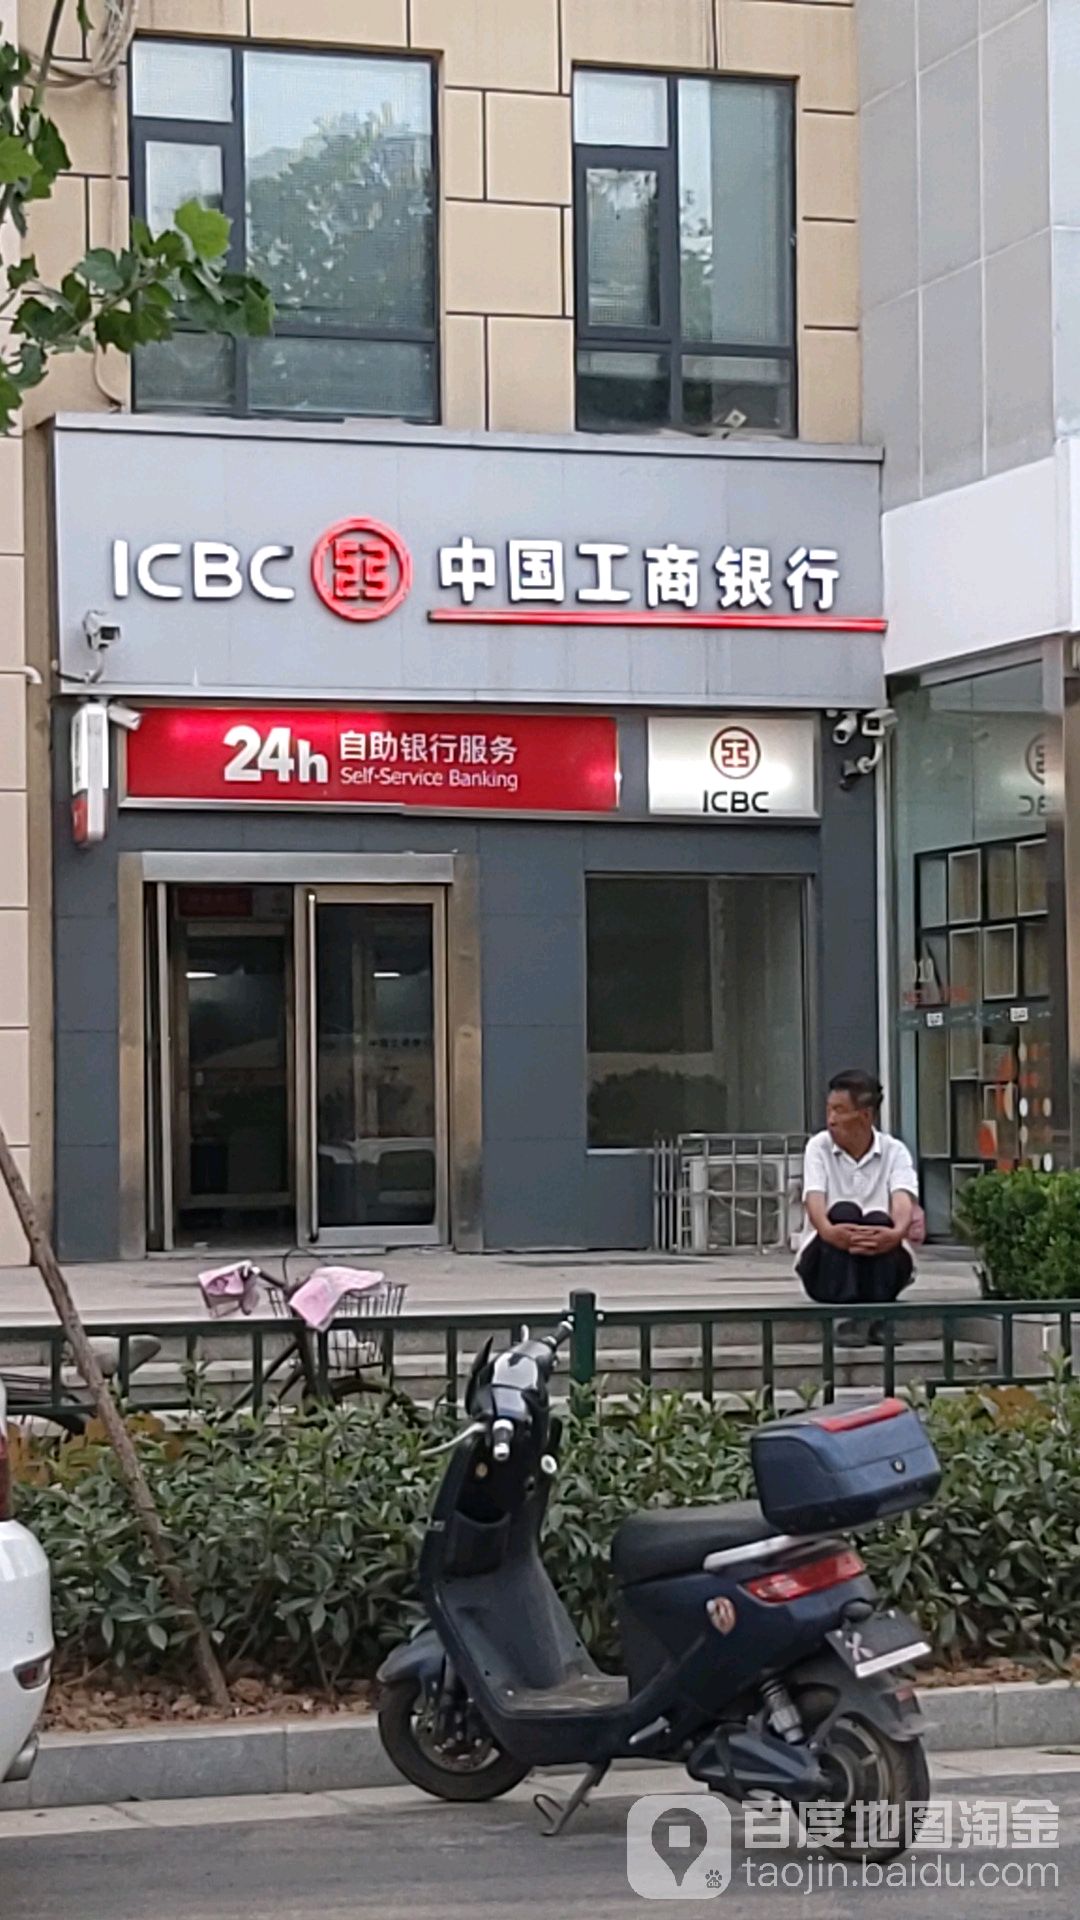 中國工商銀行24小時自助銀行服務(西苑路店)